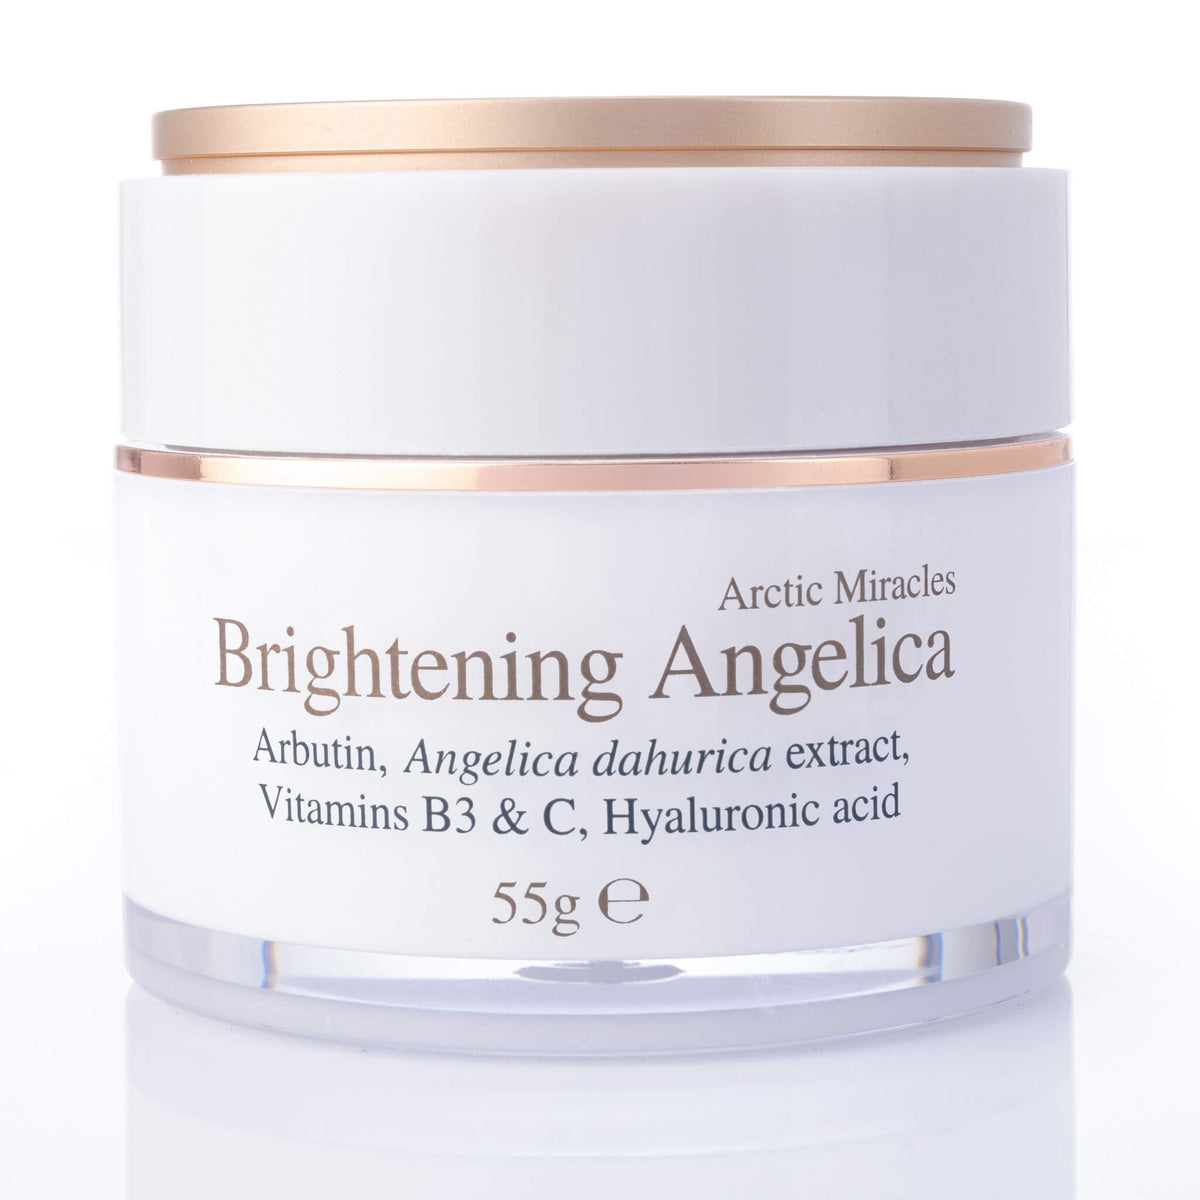 Brightening Angelica Face Moisturiser